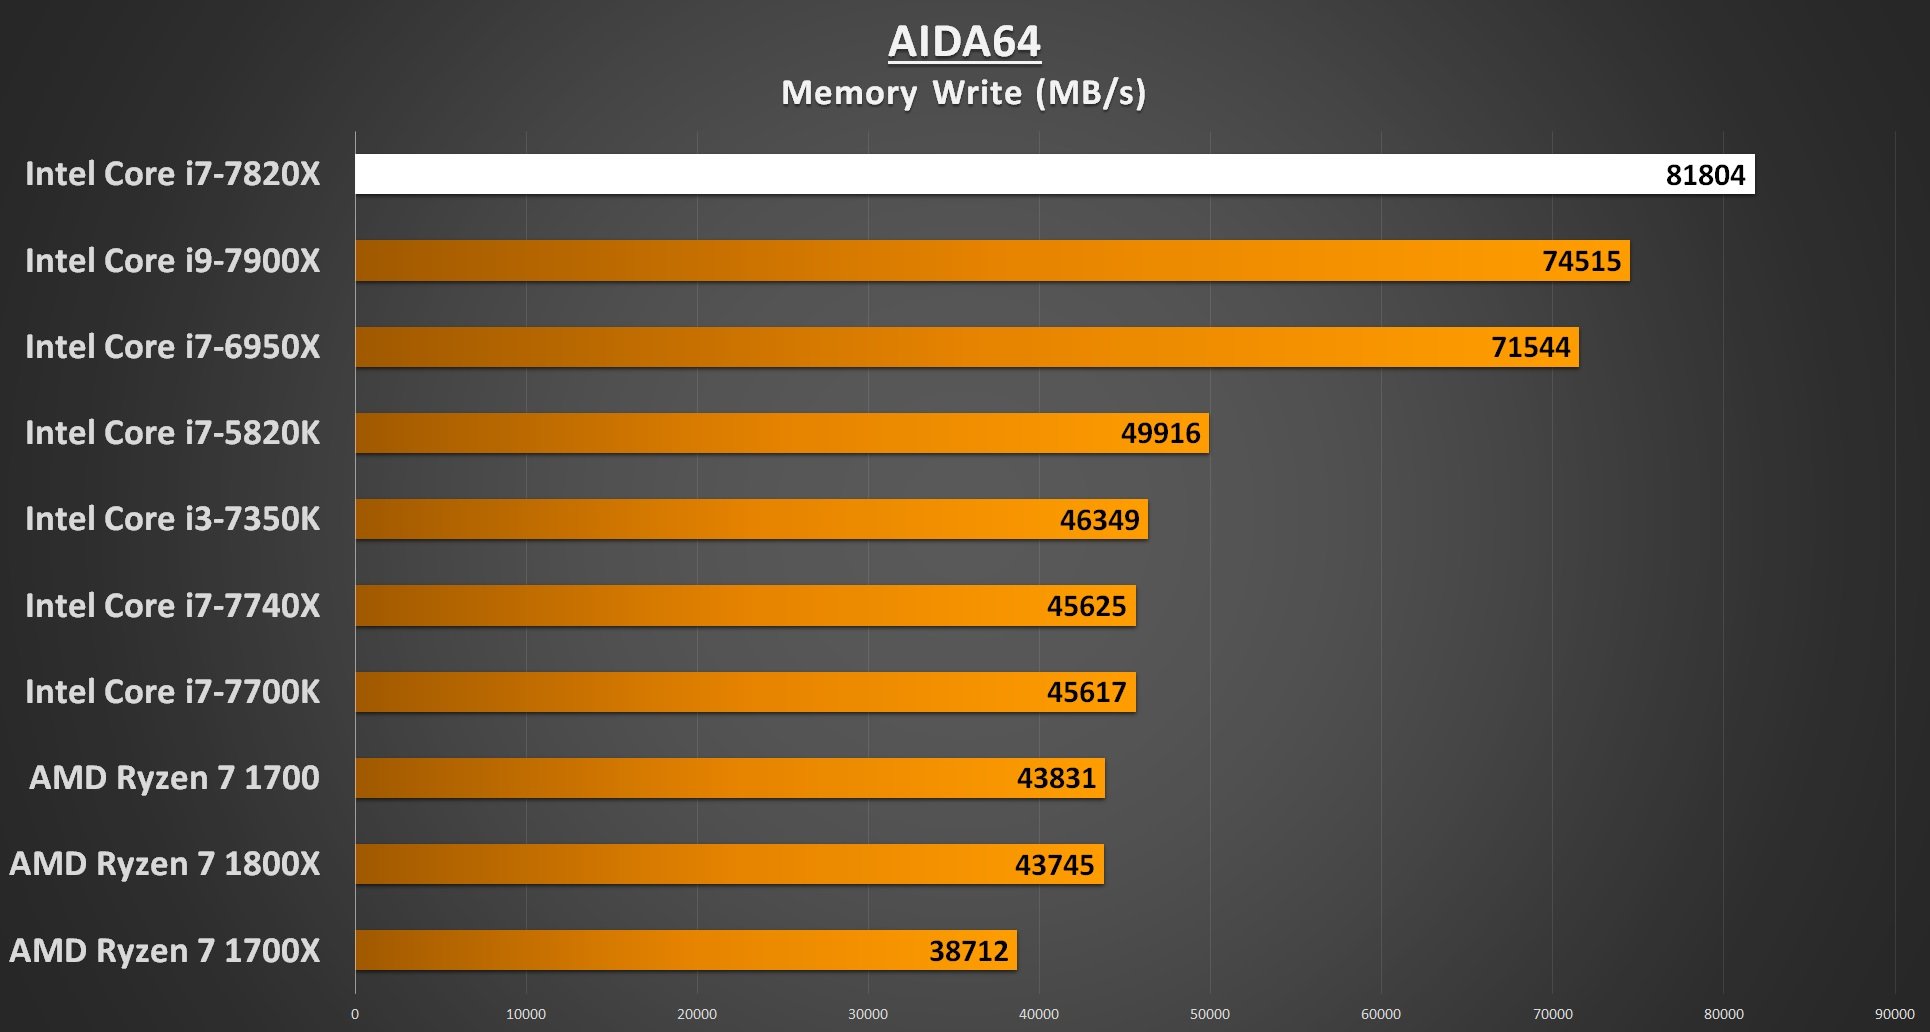 AIDA64 Memory Write - i7-7820X Performance